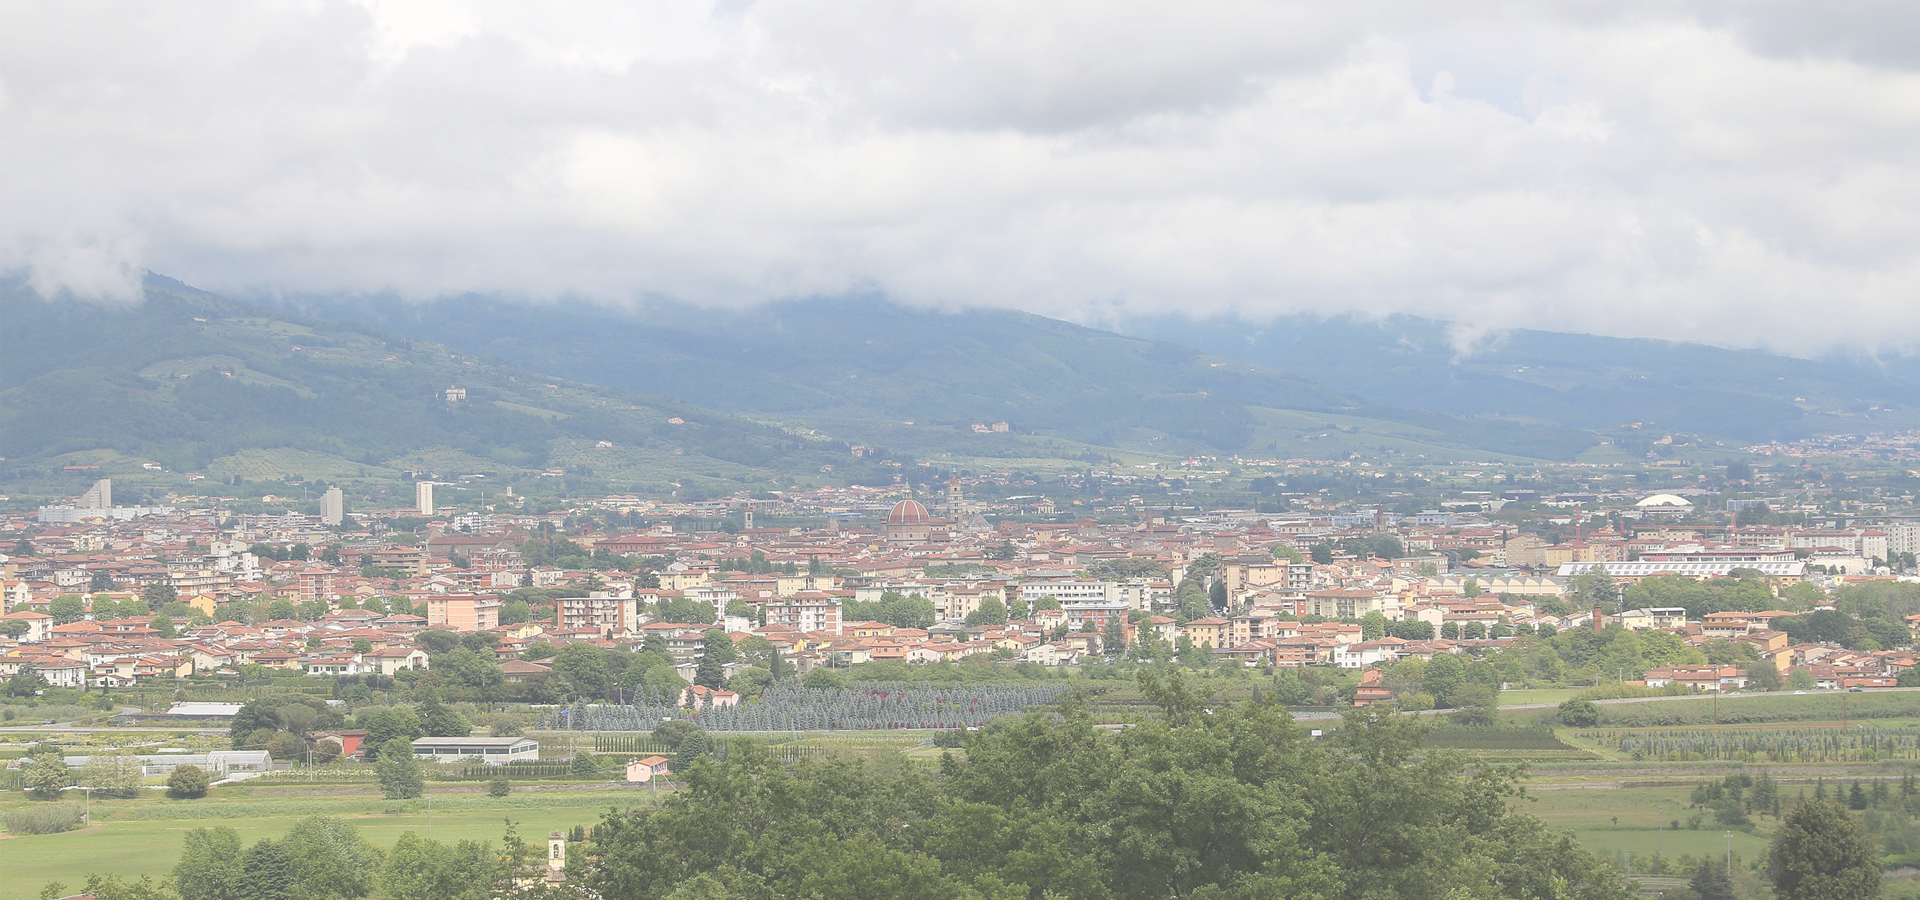 <b>Pistoia, Tuscany Region, Italy</b>